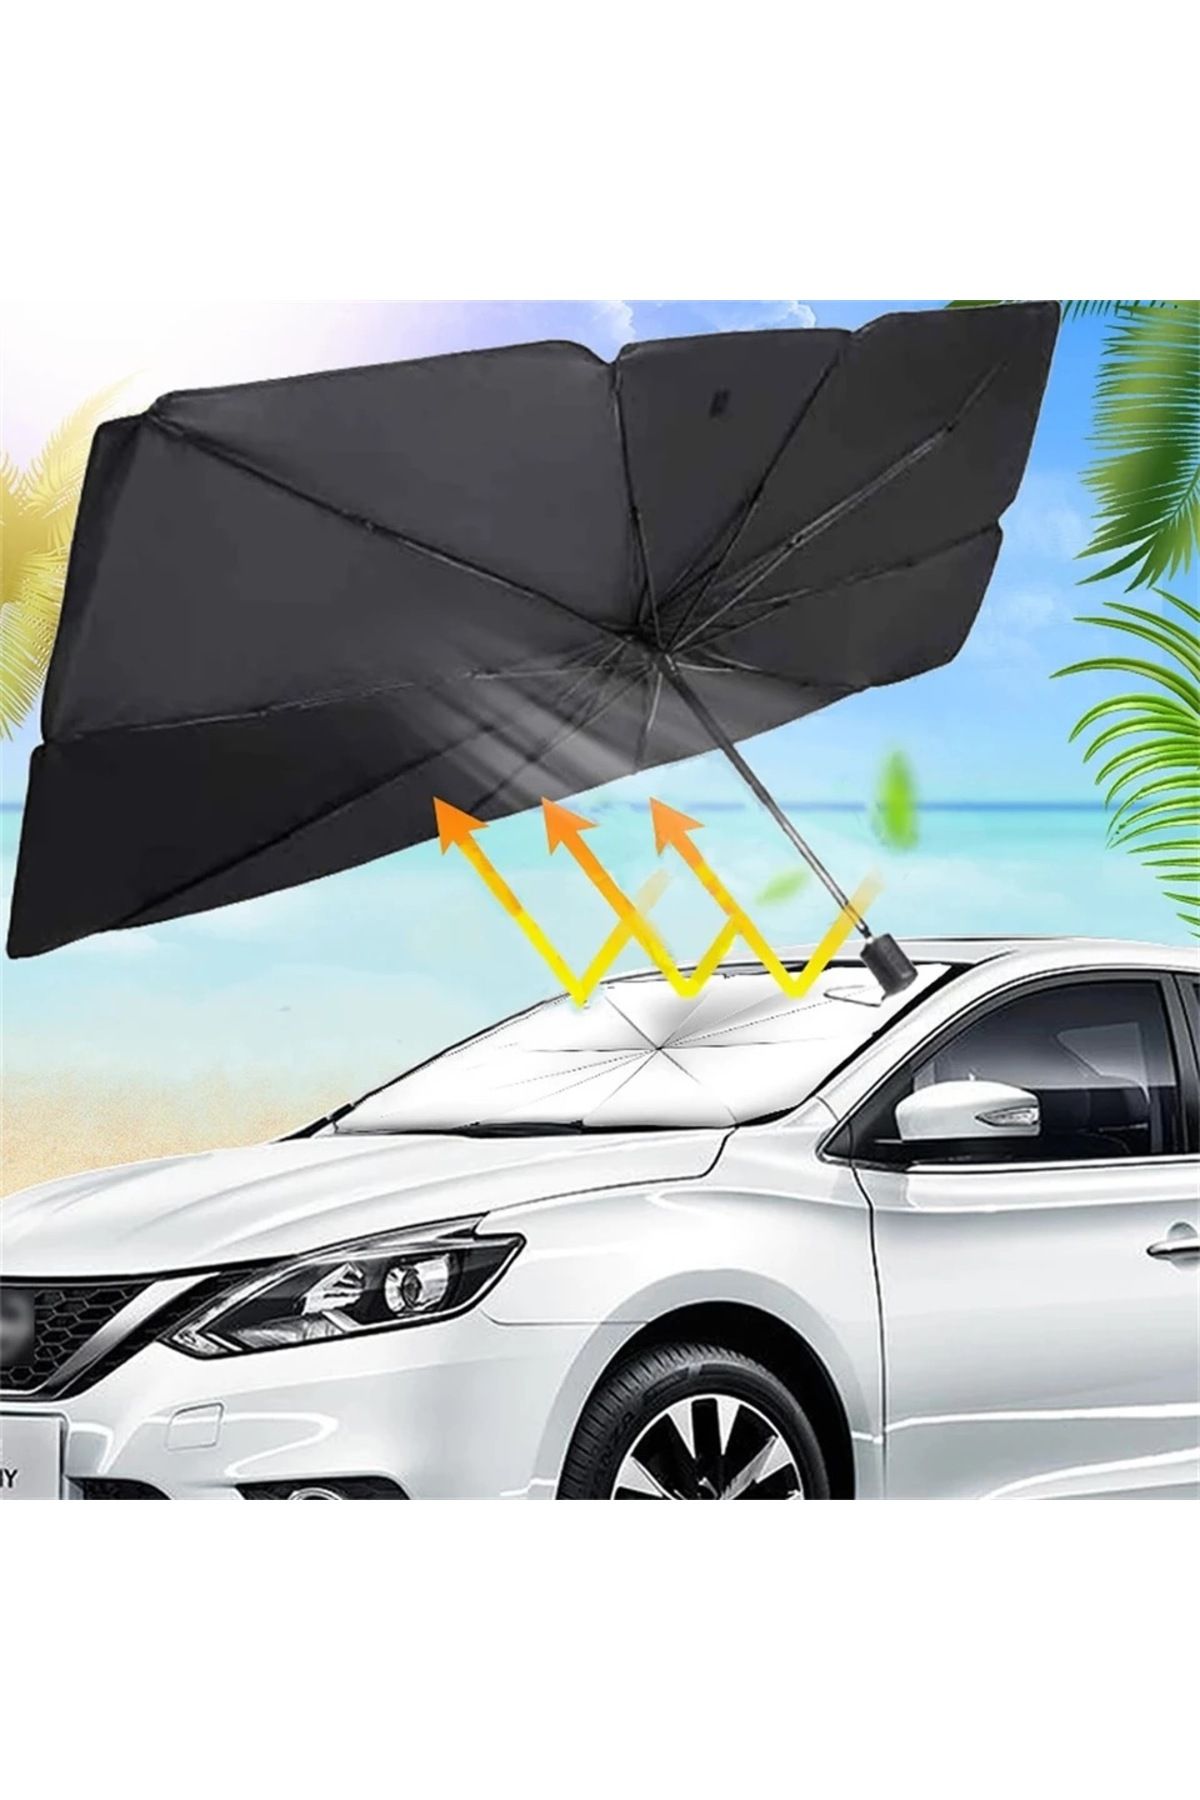 The Lavinia Araç şemsiyesi Otamatik güneşlik ön cam kapatan araç şemsiyesi